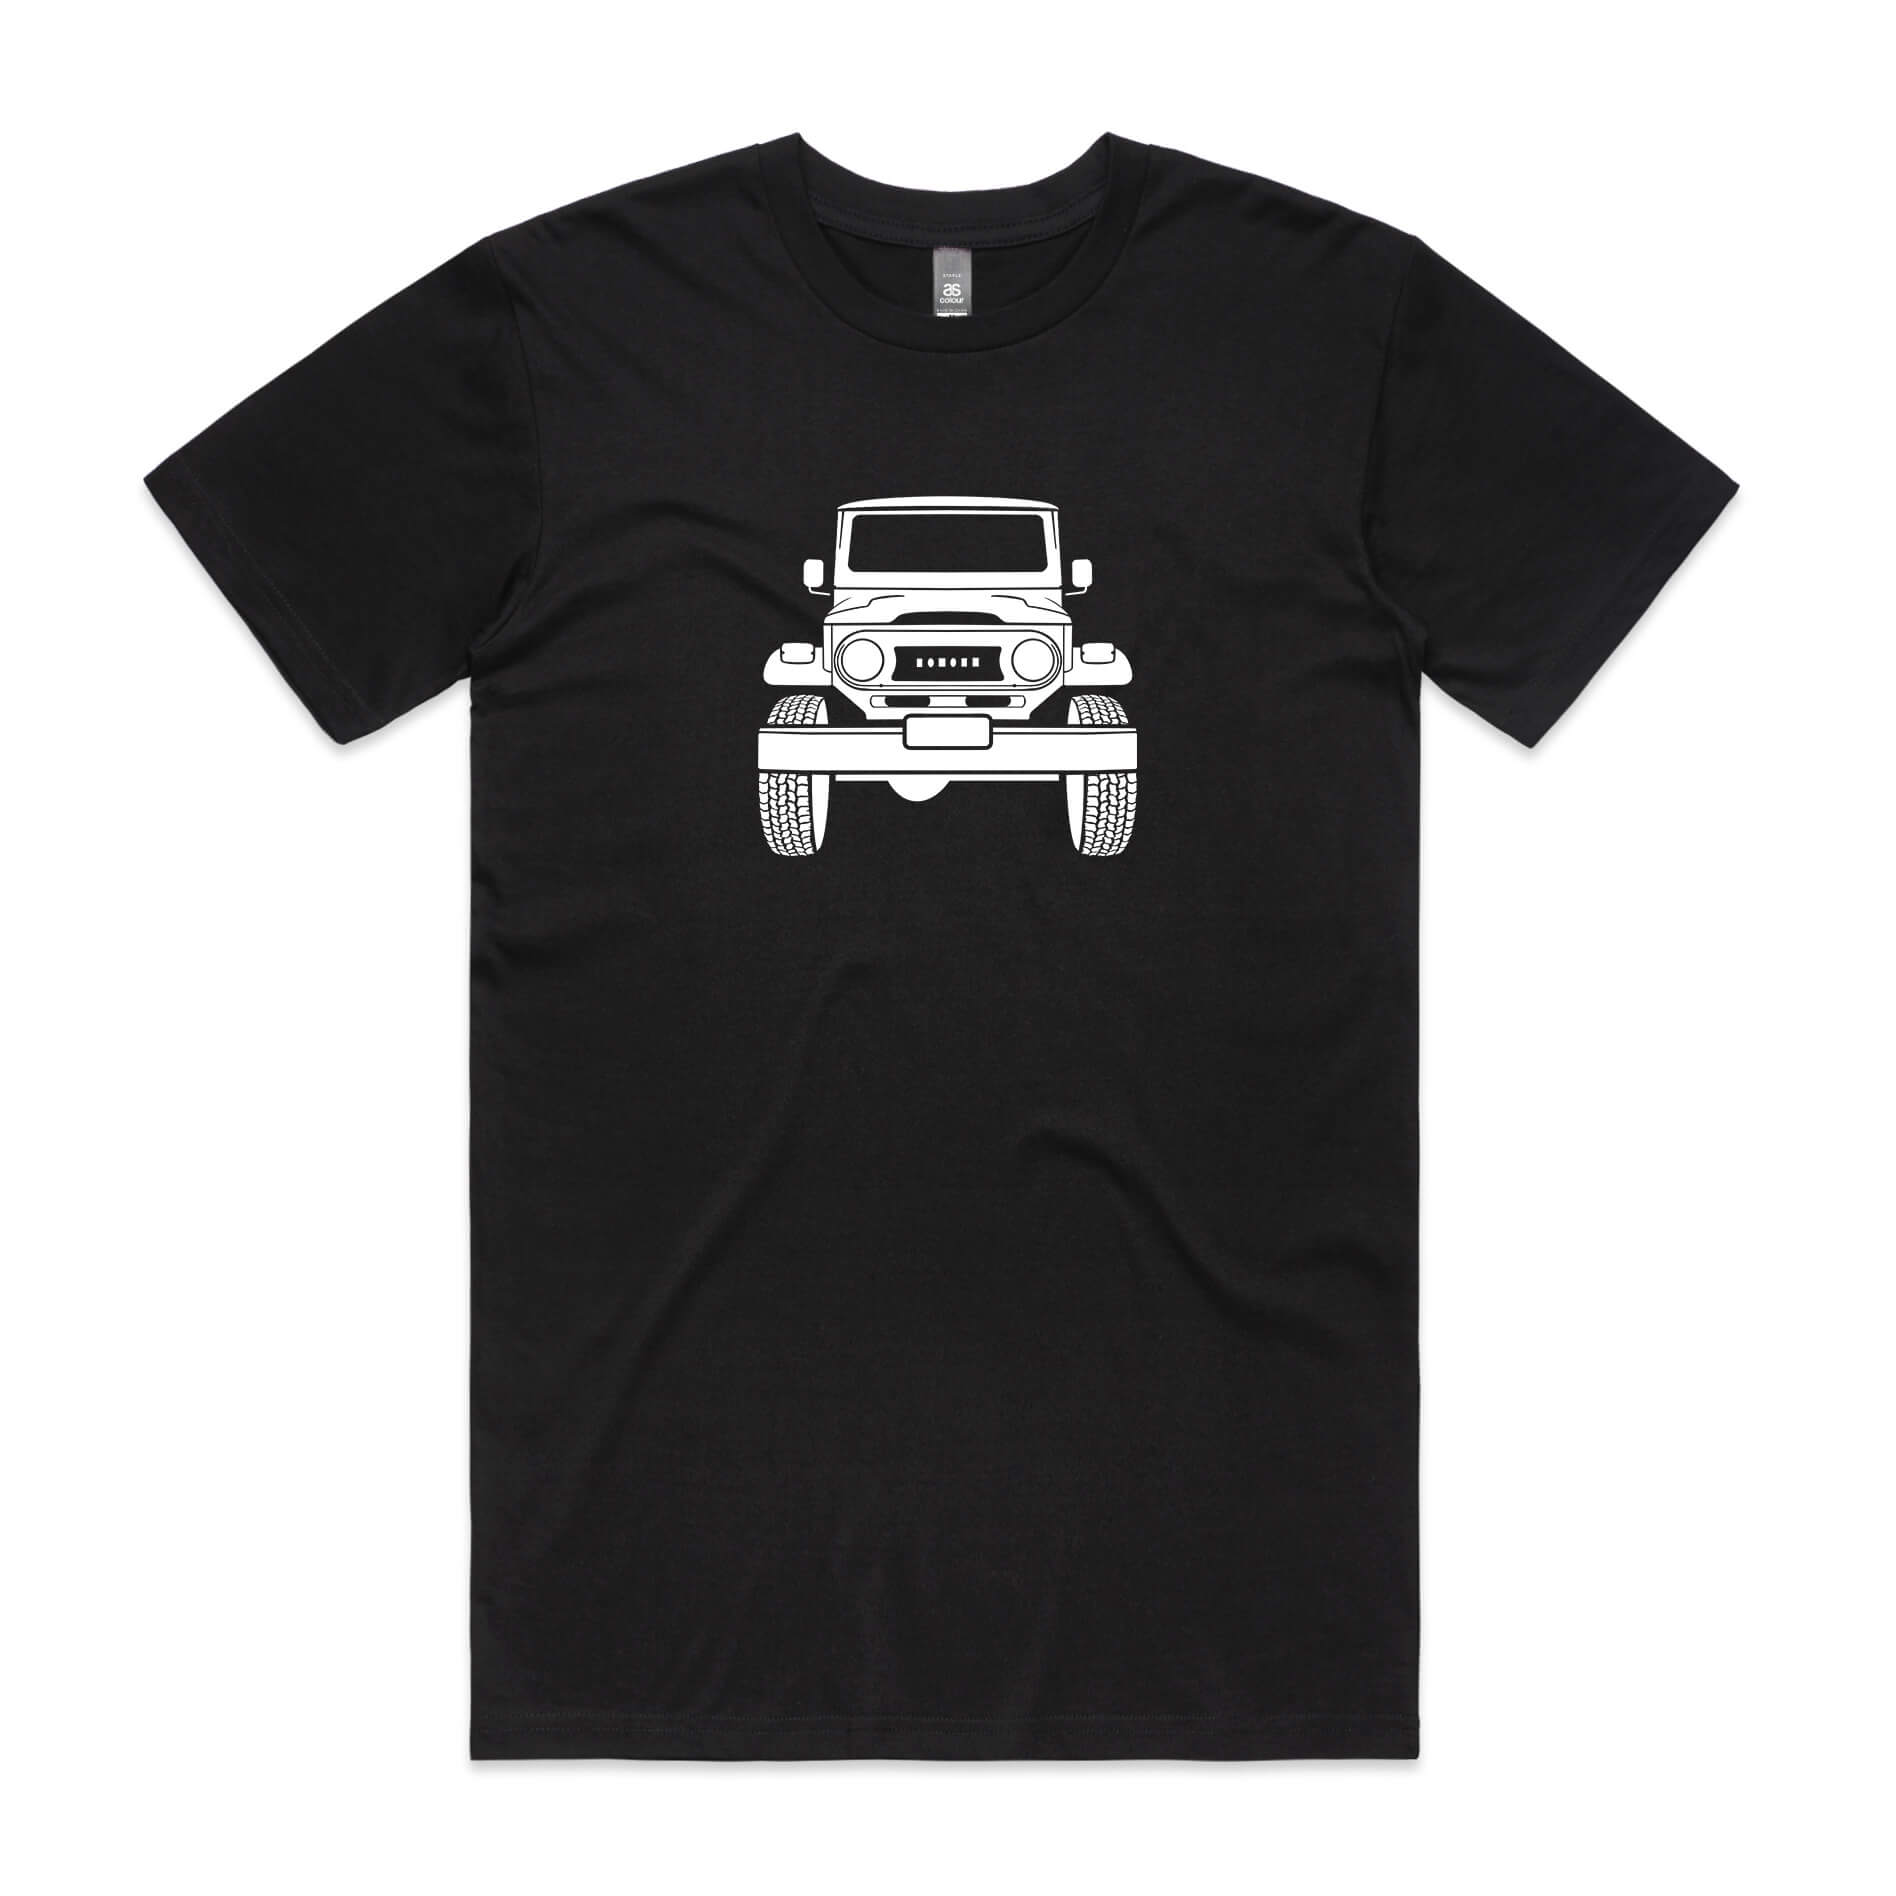 Toyota LandCruiser FJ40 t-shirt in black